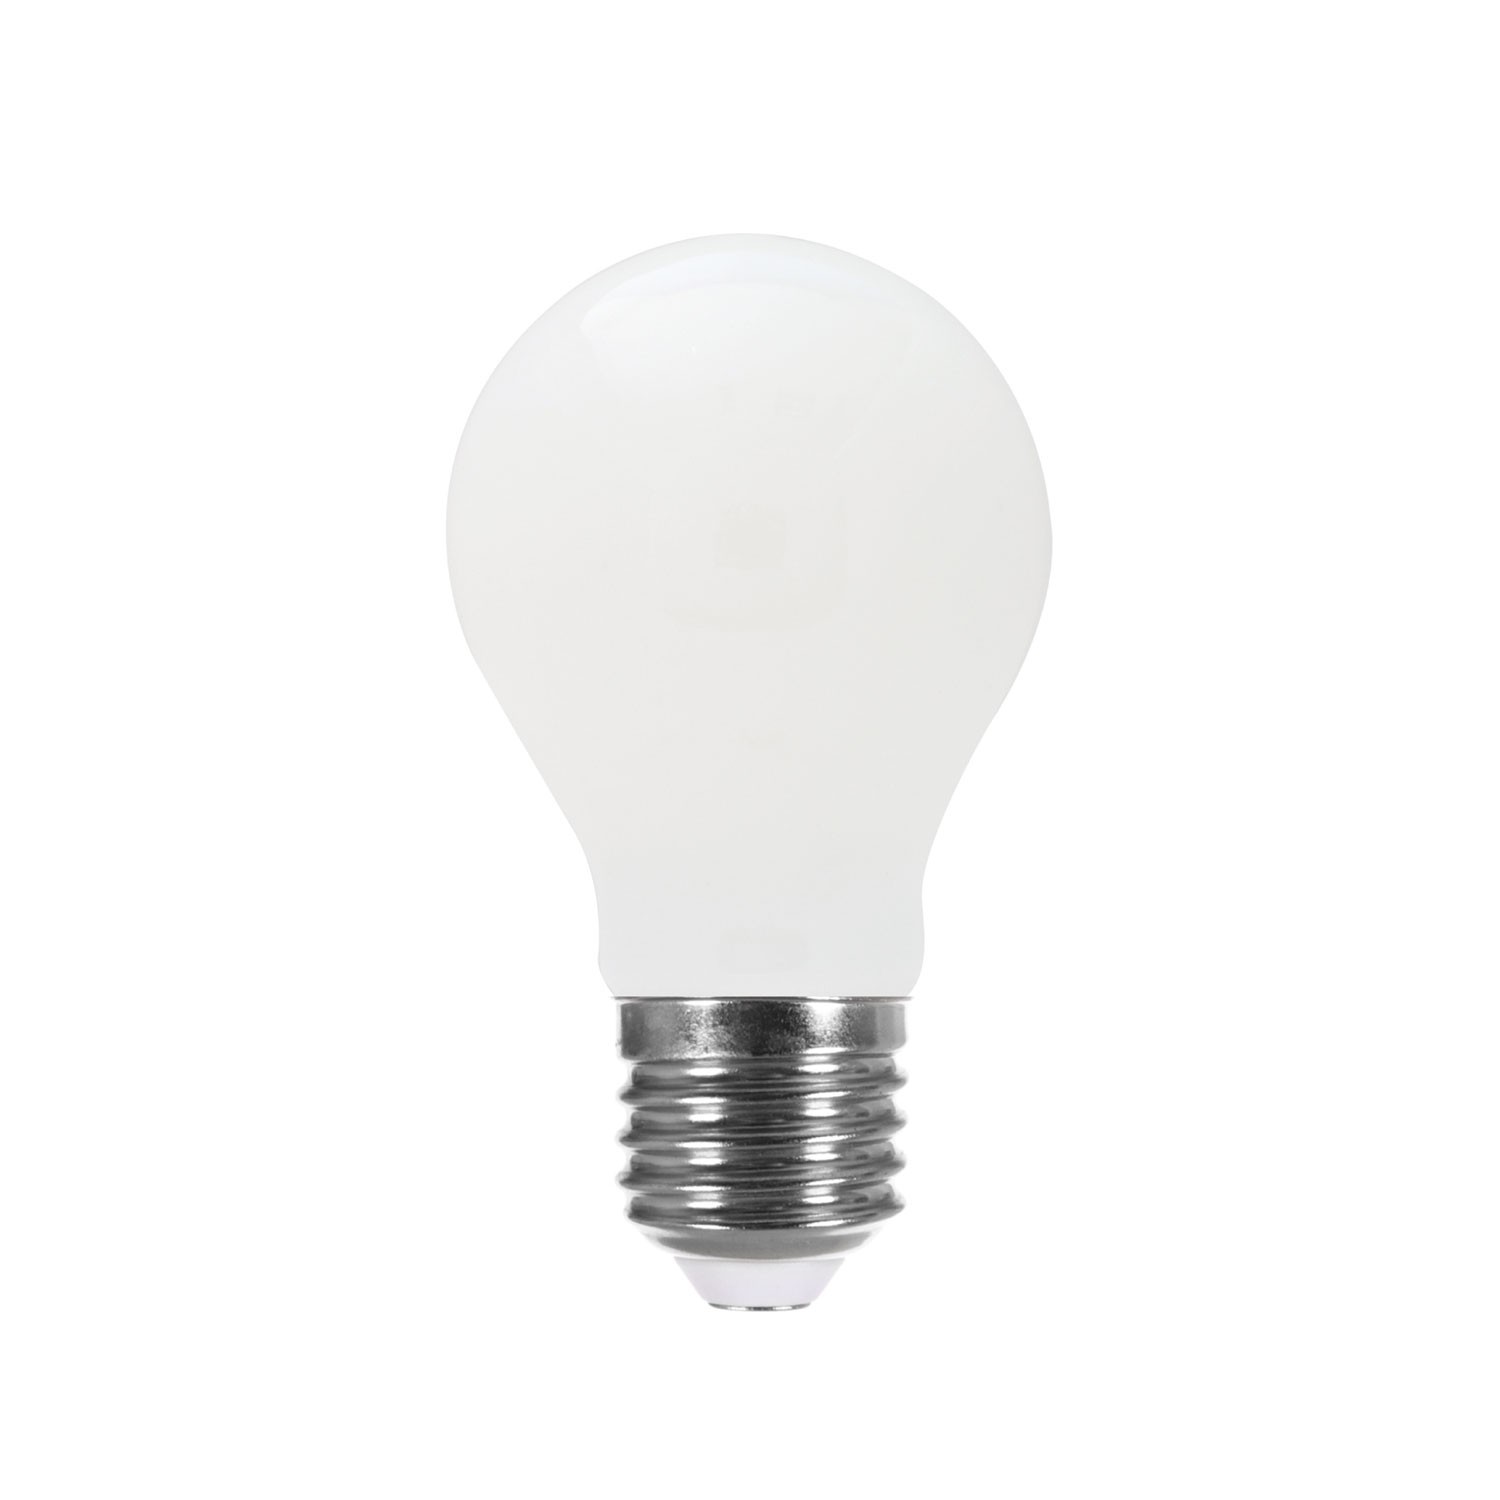 Ampoule filament LED 8W E27 2700K 1055Lm dimmable Claire